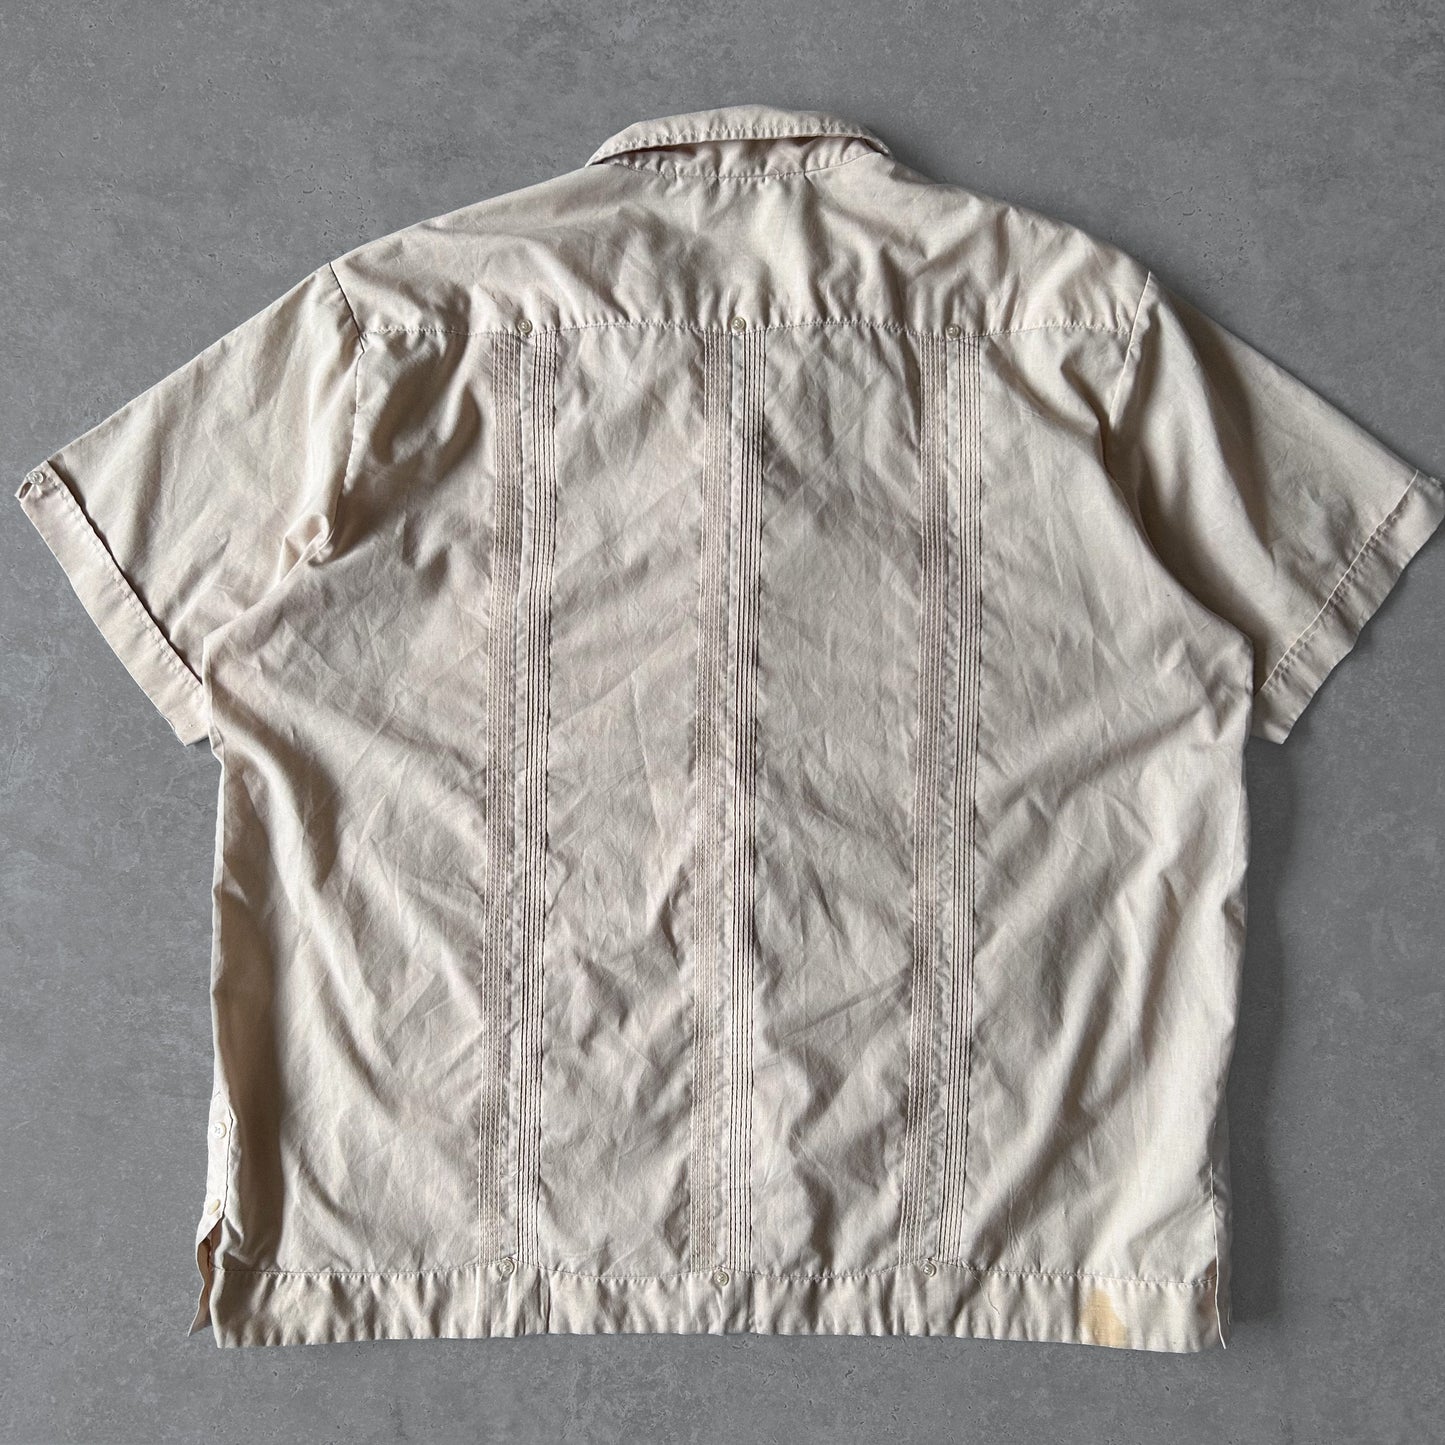 1990s - tan short sleeve guayabera cuban shirt